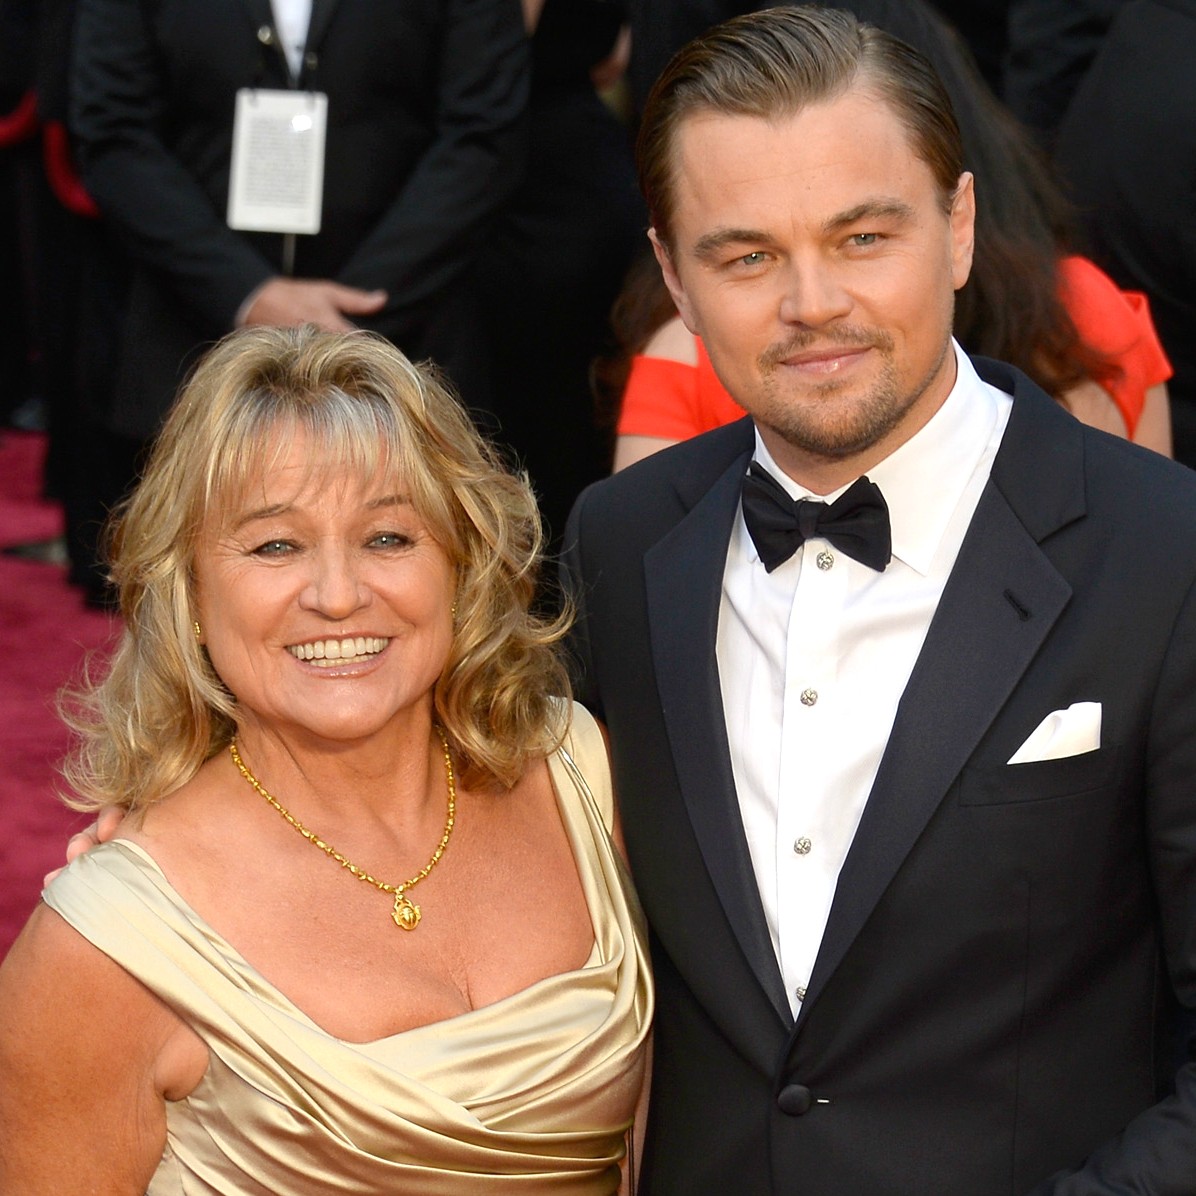 Quem também veio com a mamãe ao Oscar 2014 foi Leonardo DiCaprio, de braços dados com Irmelin Indenbirken. (Foto: Getty Images)